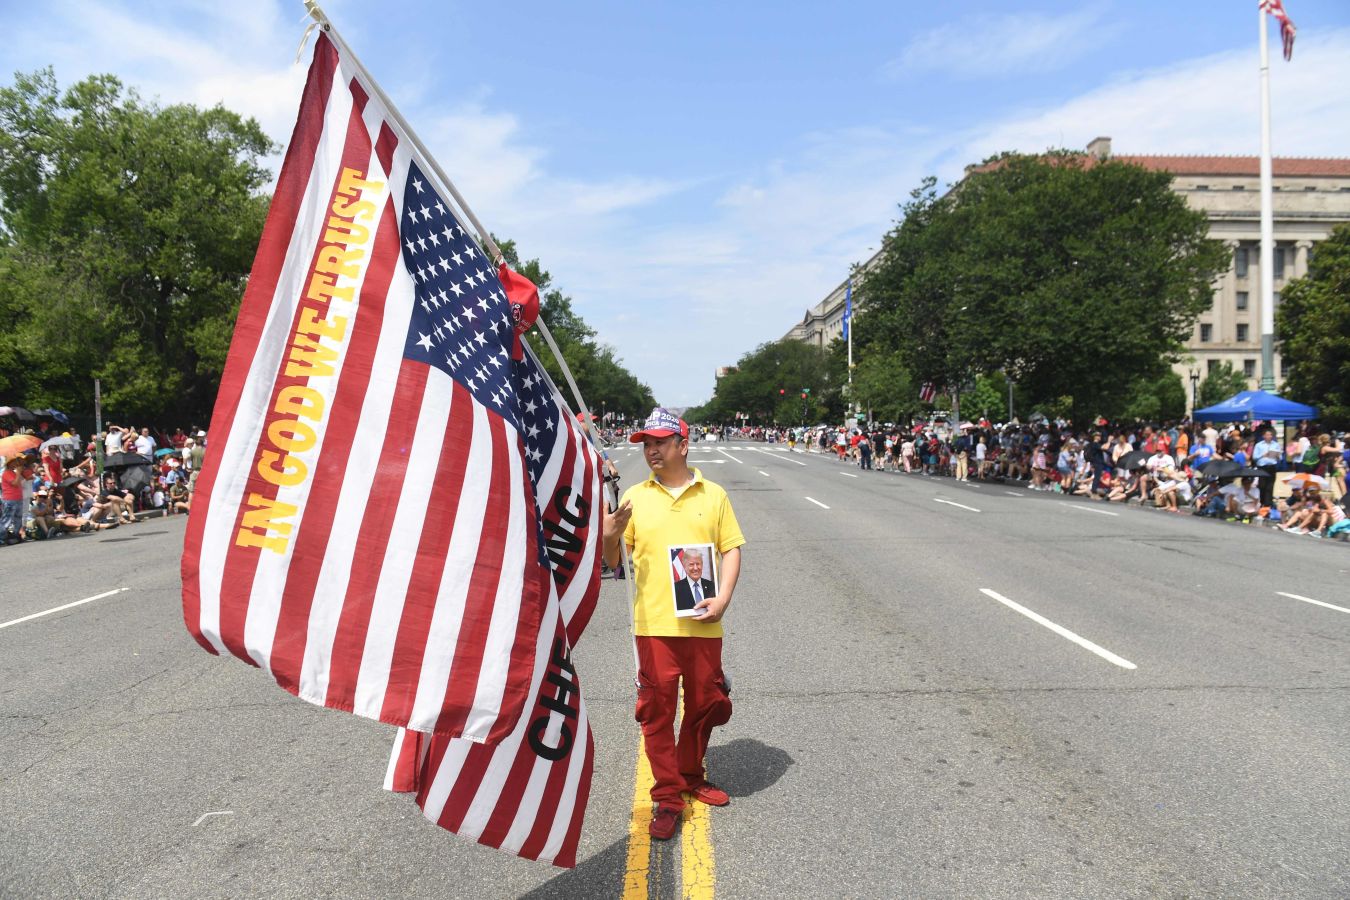 Fotos: Las celebraciones del 4 de julio en EEUU